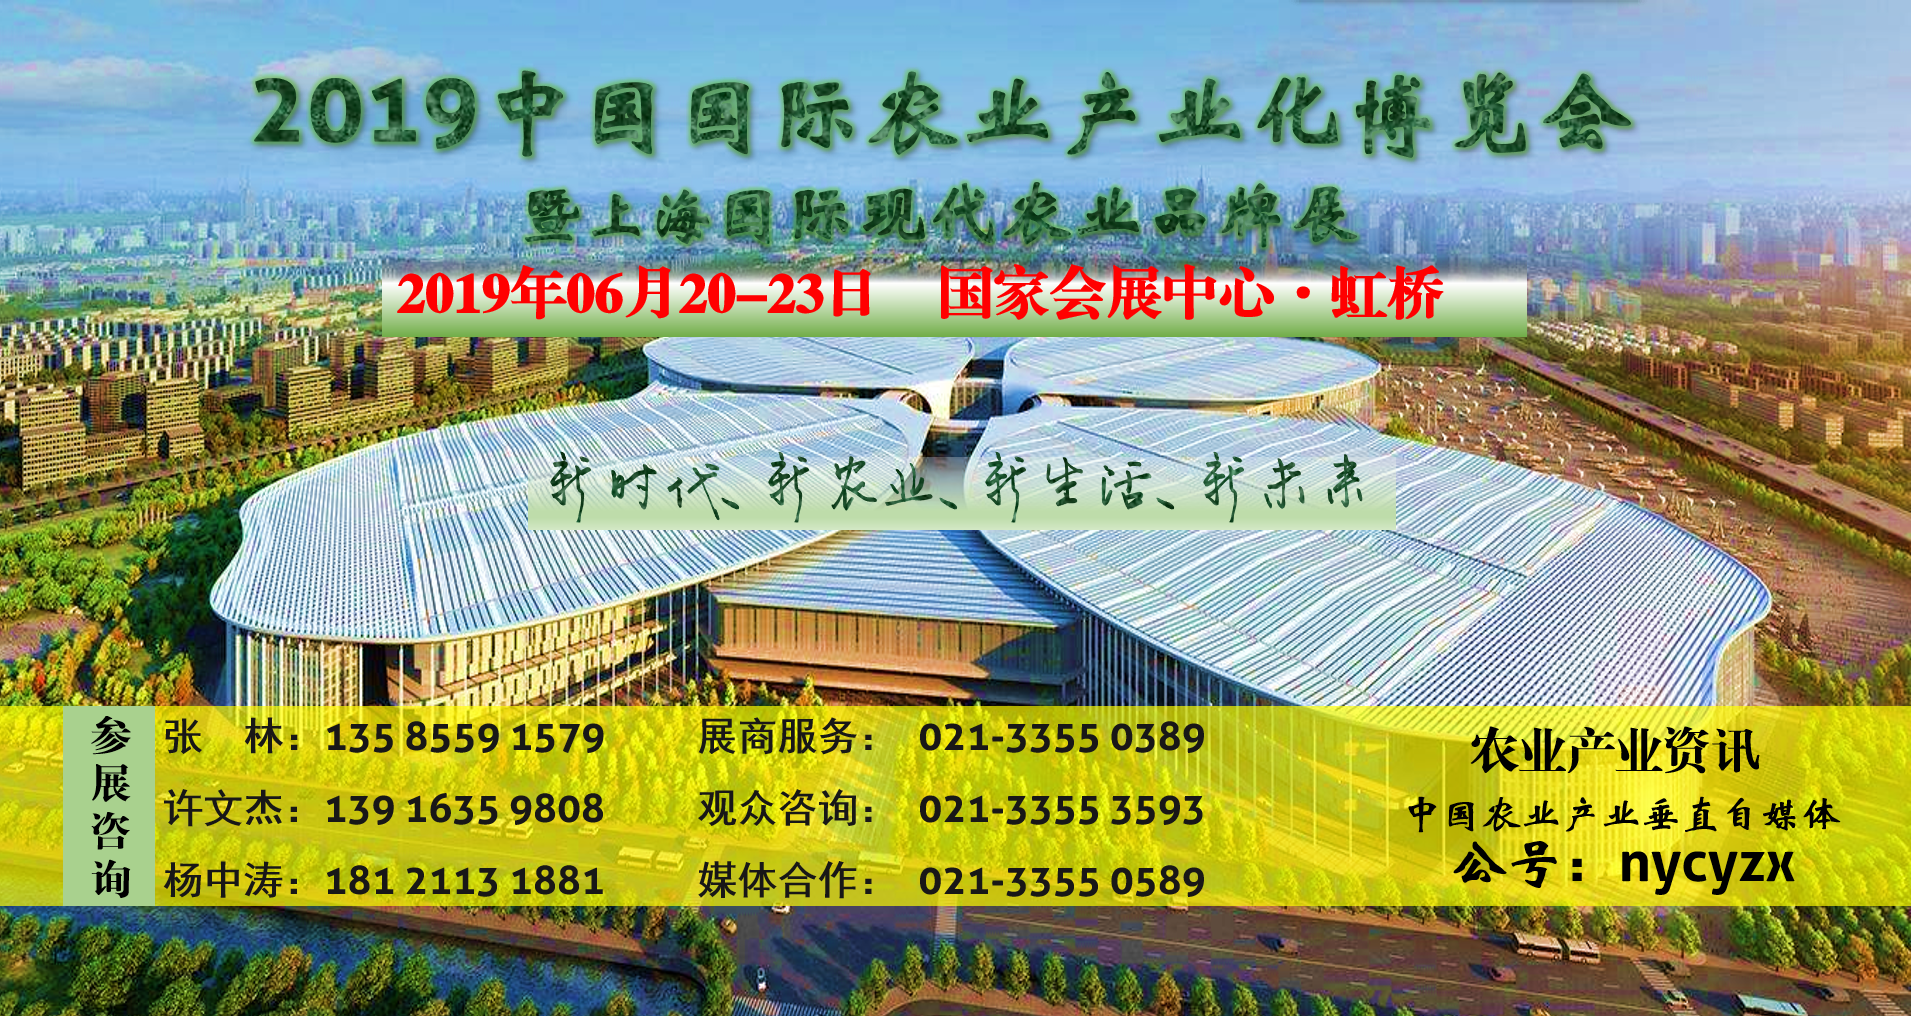 2019中国农业产业化博览会上海国际现代农业品牌展上海农博会